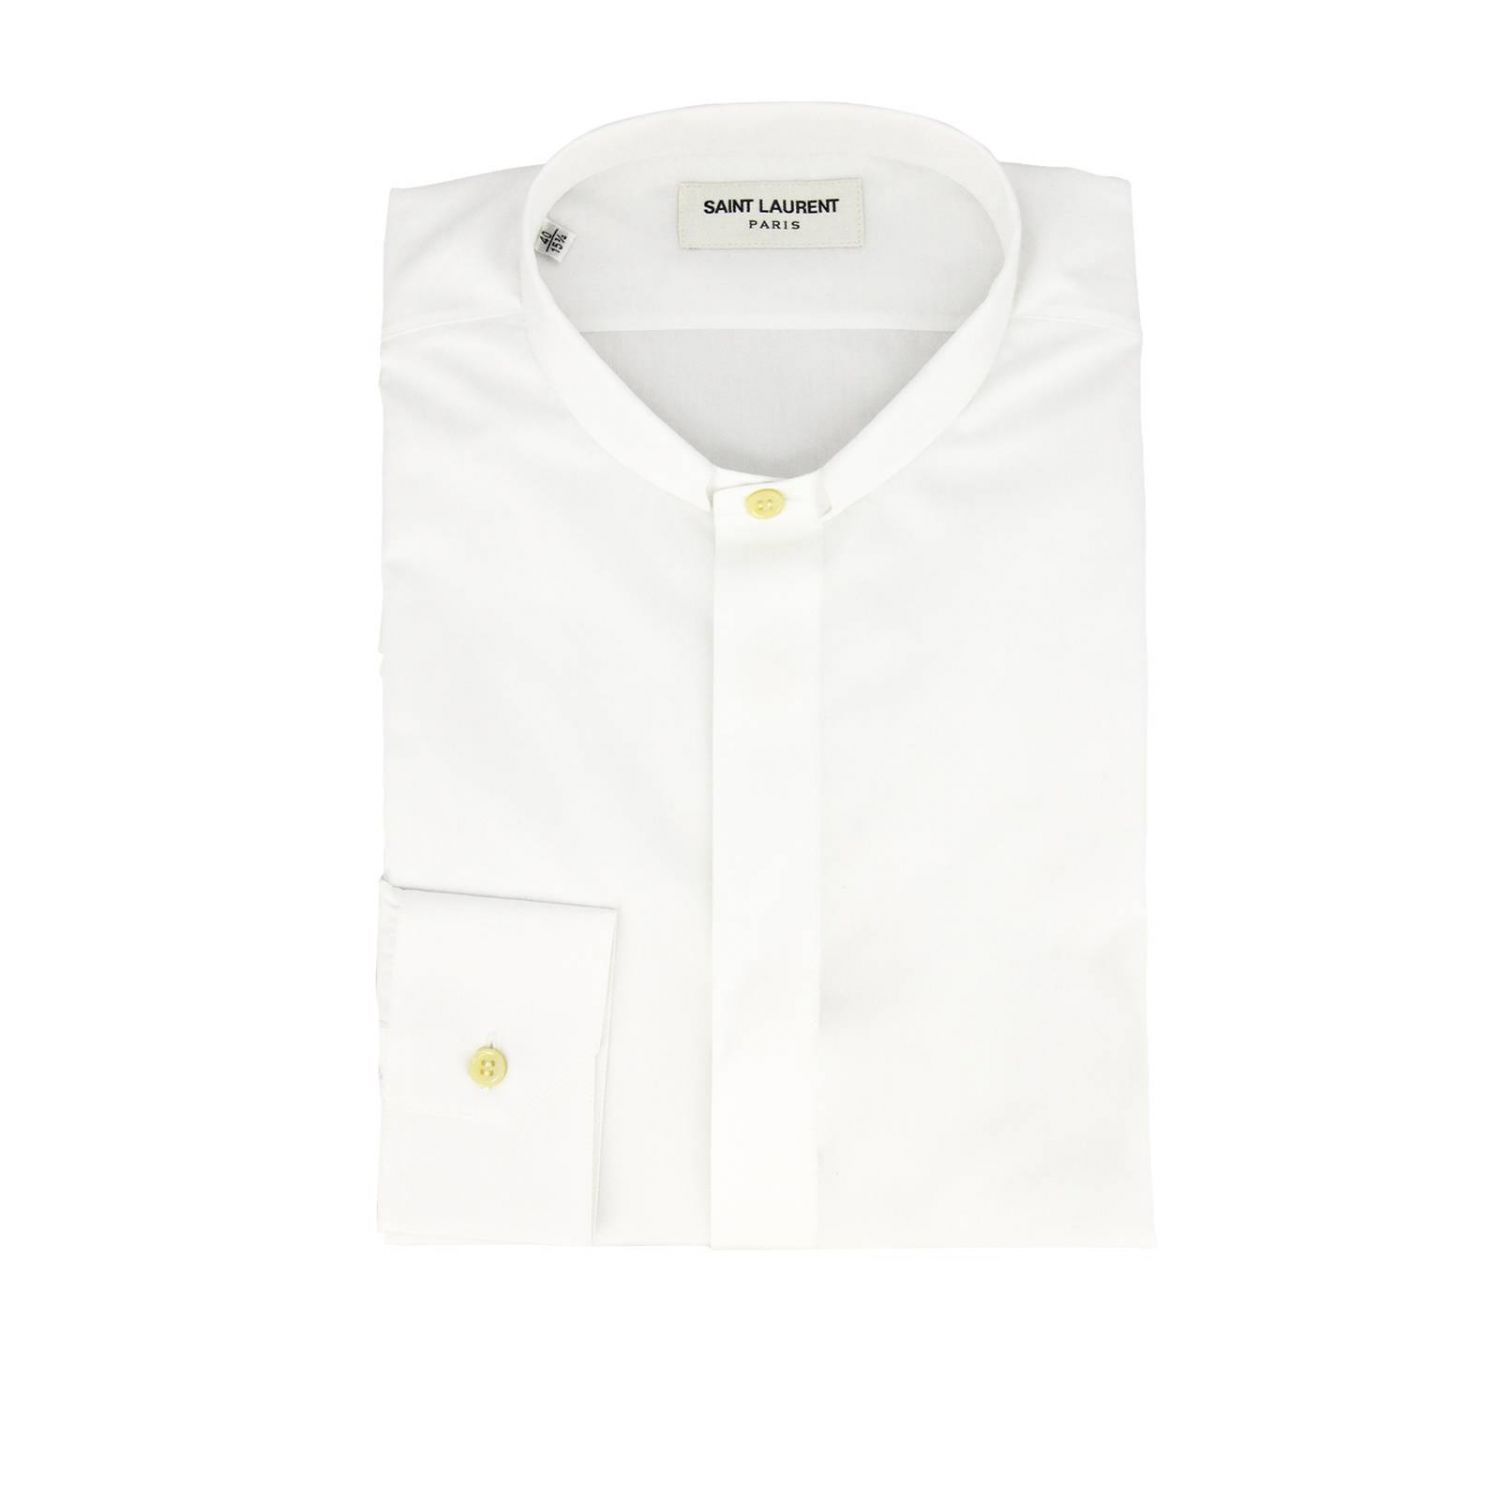 Saint Laurent Outlet: Shirt men - White | Shirt Saint Laurent 467312 ...